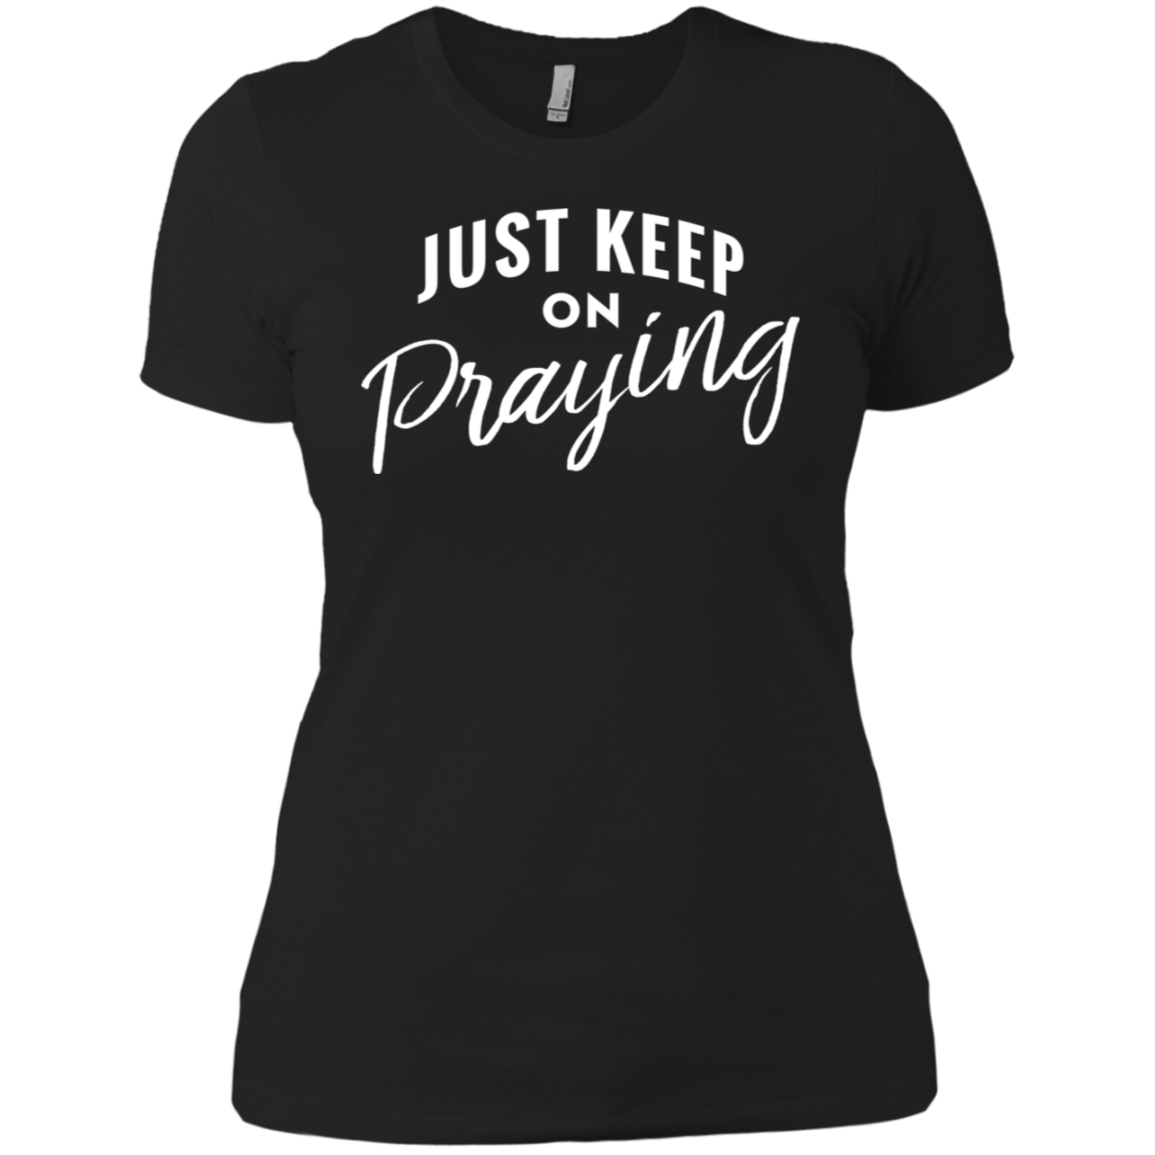 Just Keep On Praying